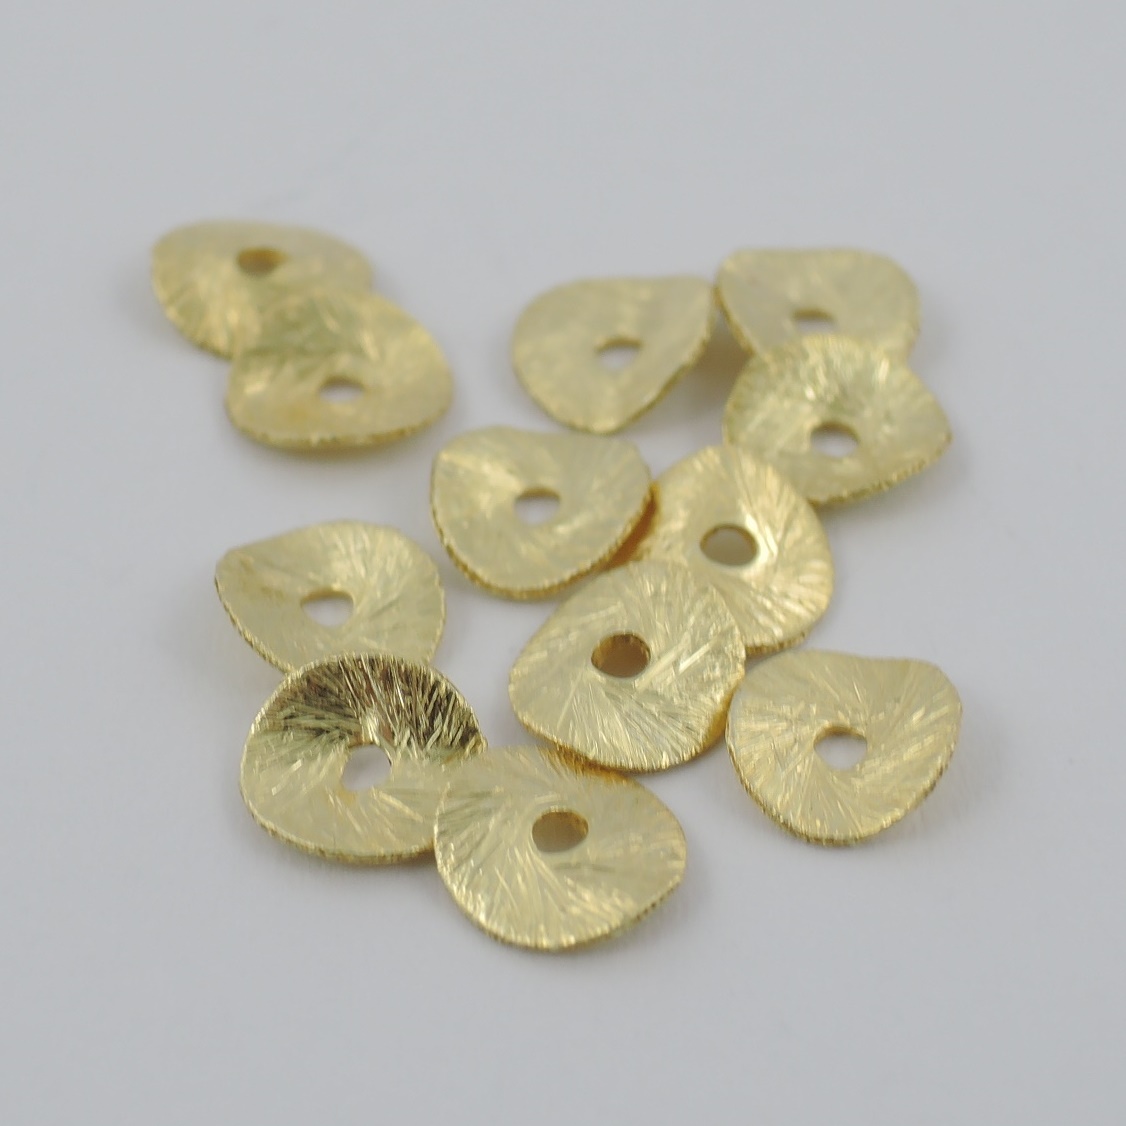 Scheibe Silber vergoldet 12 mm gebogen - Goldgottlieb